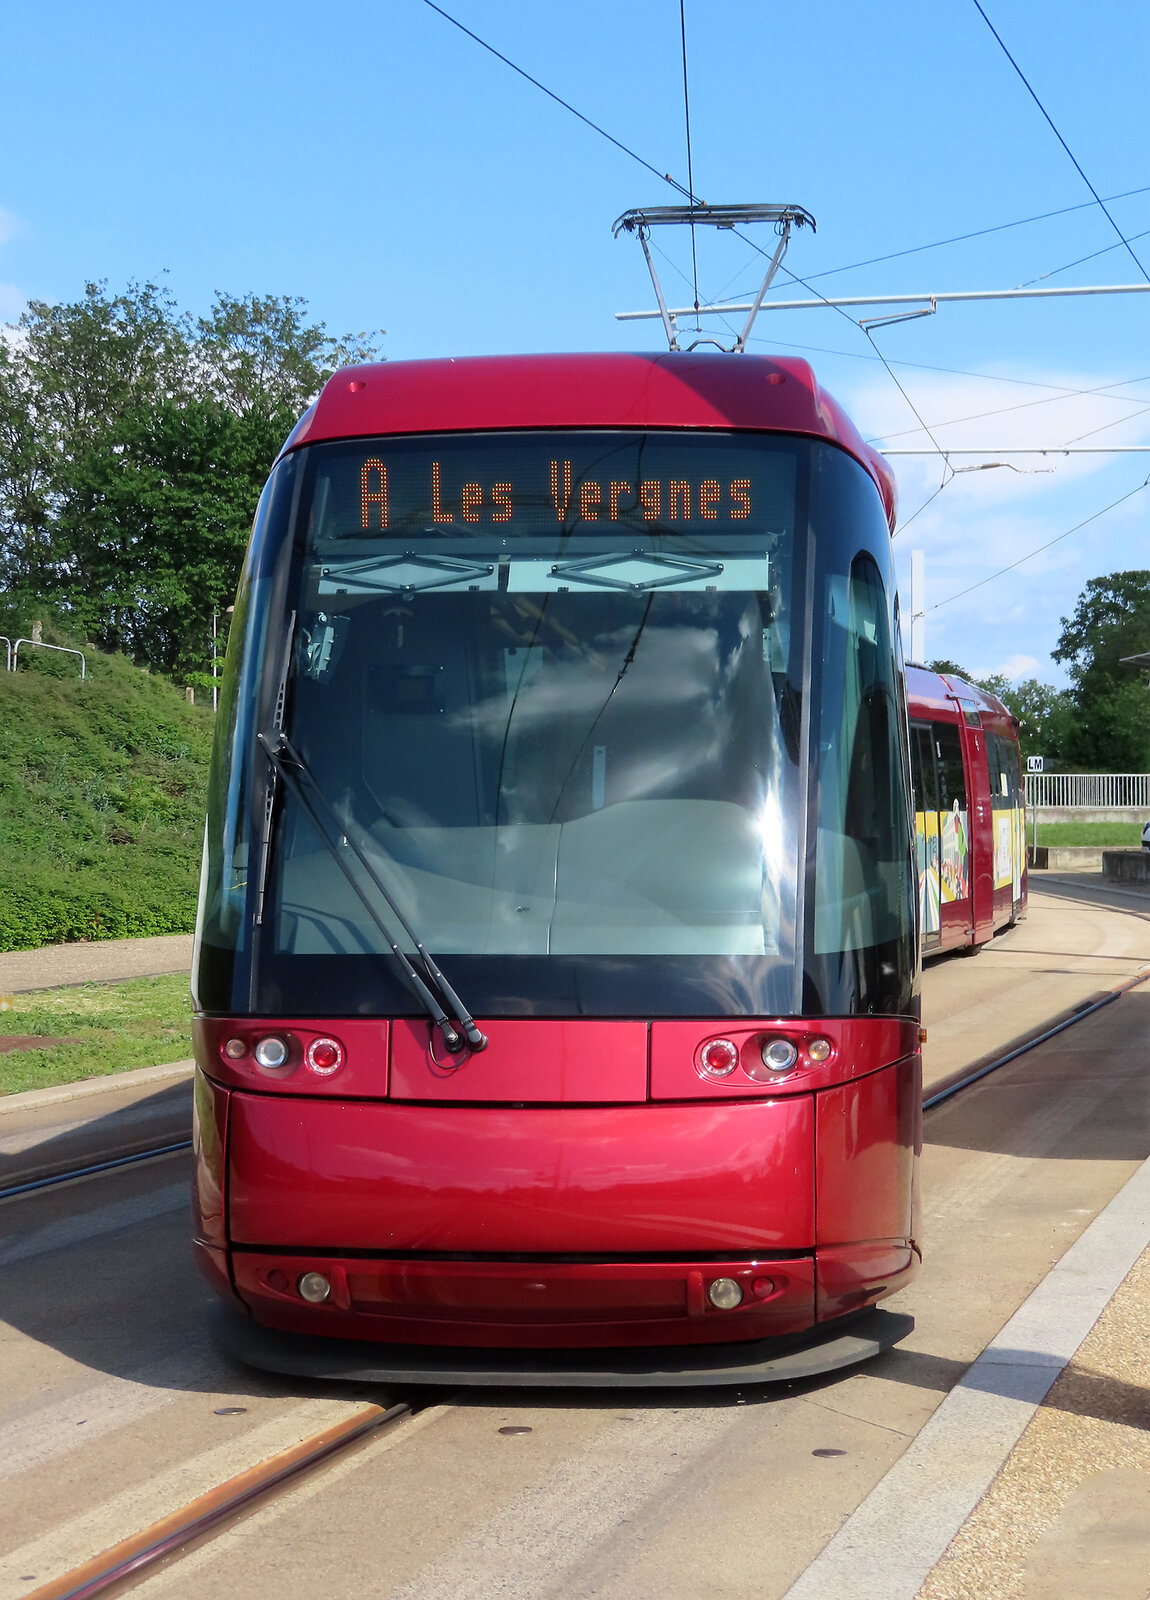 Spezielle Strassenbahn in Clermont-Ferrand: Tramway sur pneumatiques (Strassenbahn auf Gummirädern), System Translohr. Die Fahrzeuge werden mittels einer Leitschiene in der Mitte geführt. Hier an der Haltestelle La Pardieu Gare wechselt das ankommende Fahrzeug für den Fahrrichtungswechsel auf das andere Gleis. Clermont-Ferrand, 22.5.2023